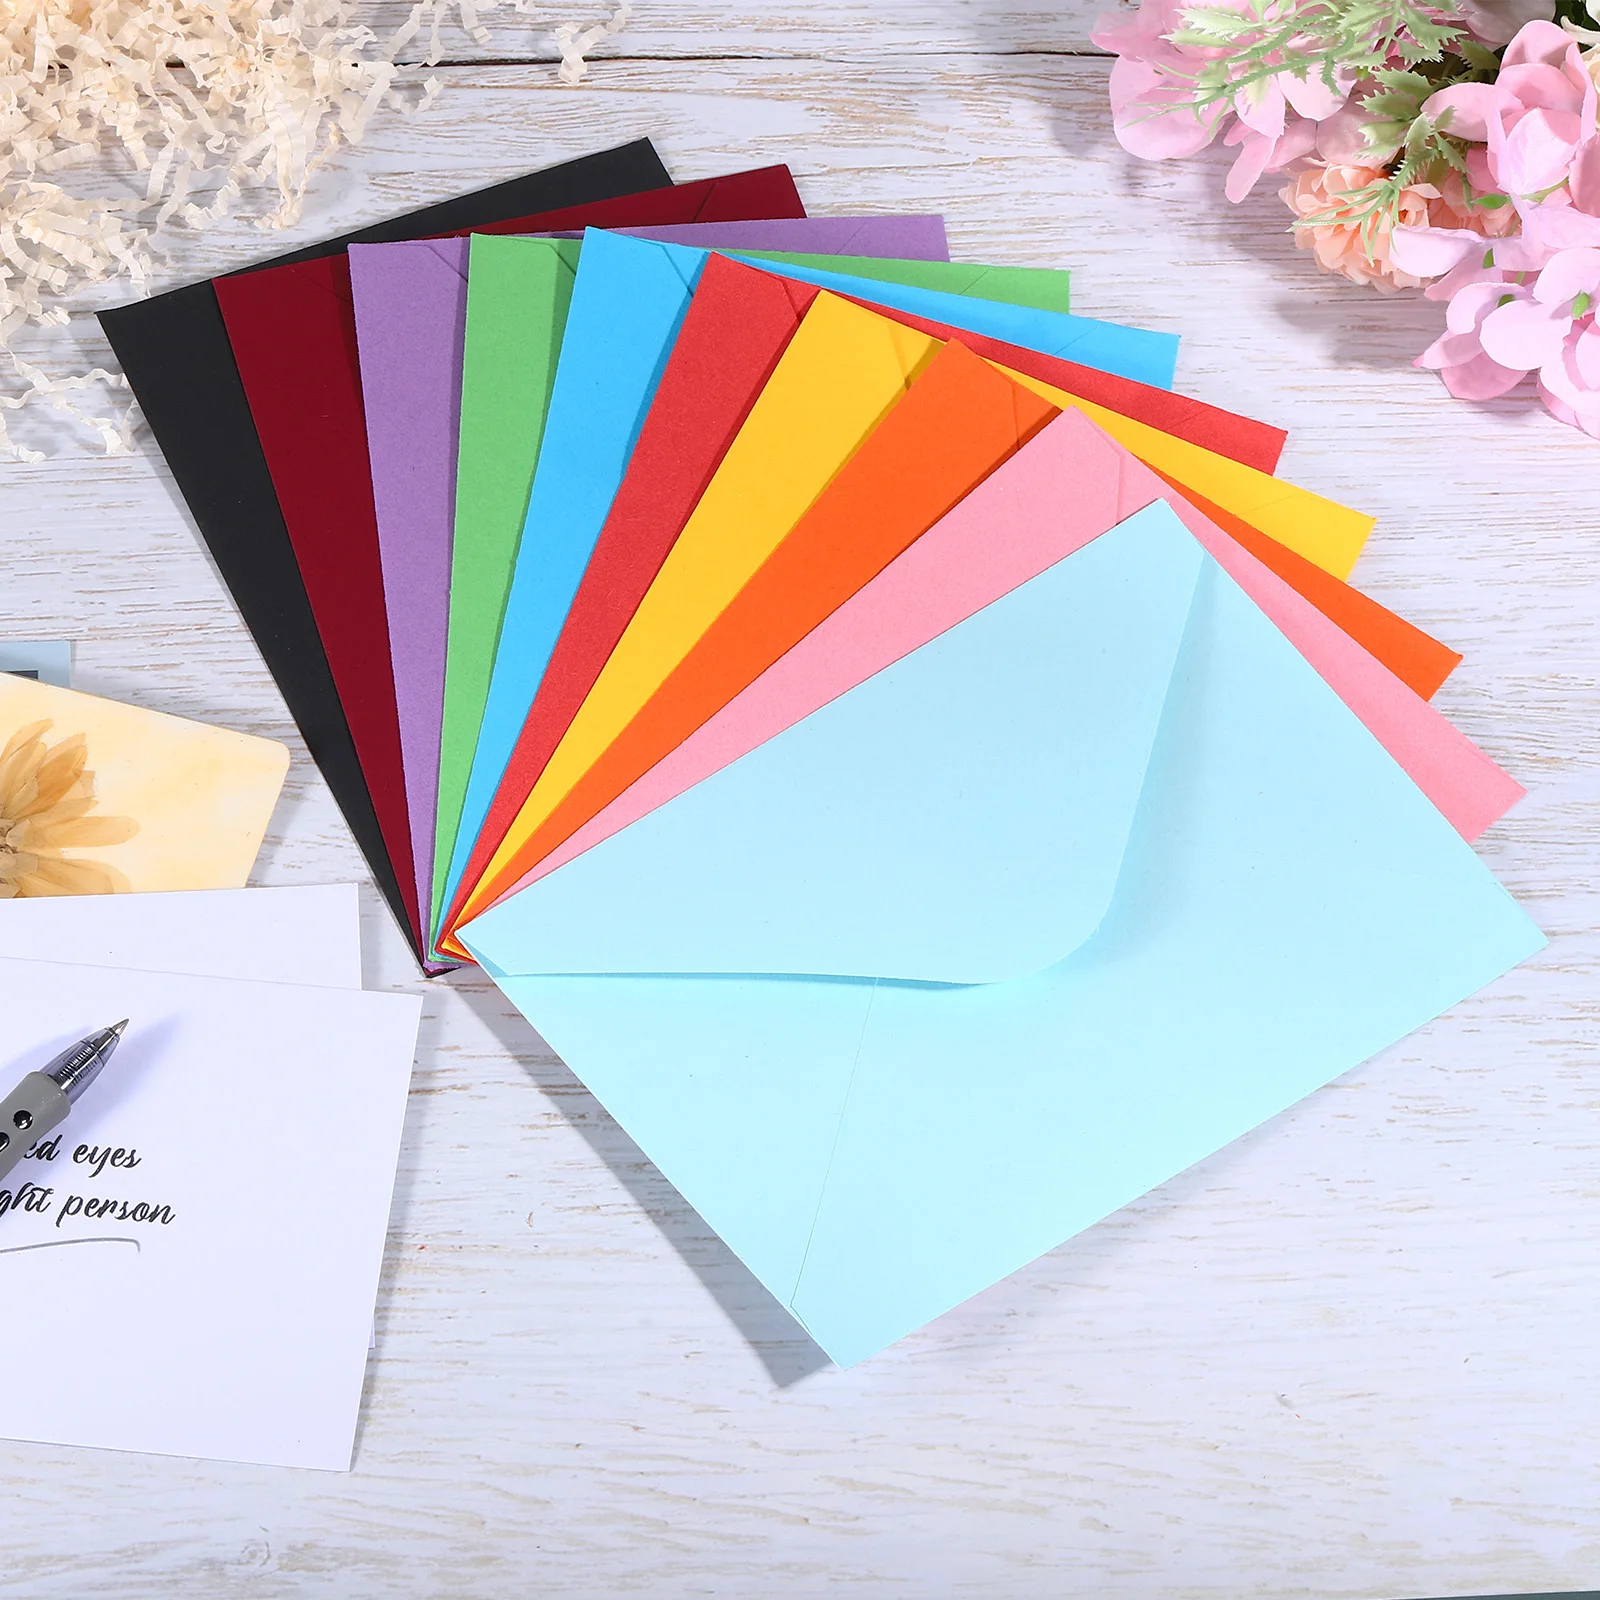 Mini Envelopes de Papel para Convite De Casamento, Cartão De Visita, Envelope Ocidental, 10x7cm, 50 Pcs, 100Pcs